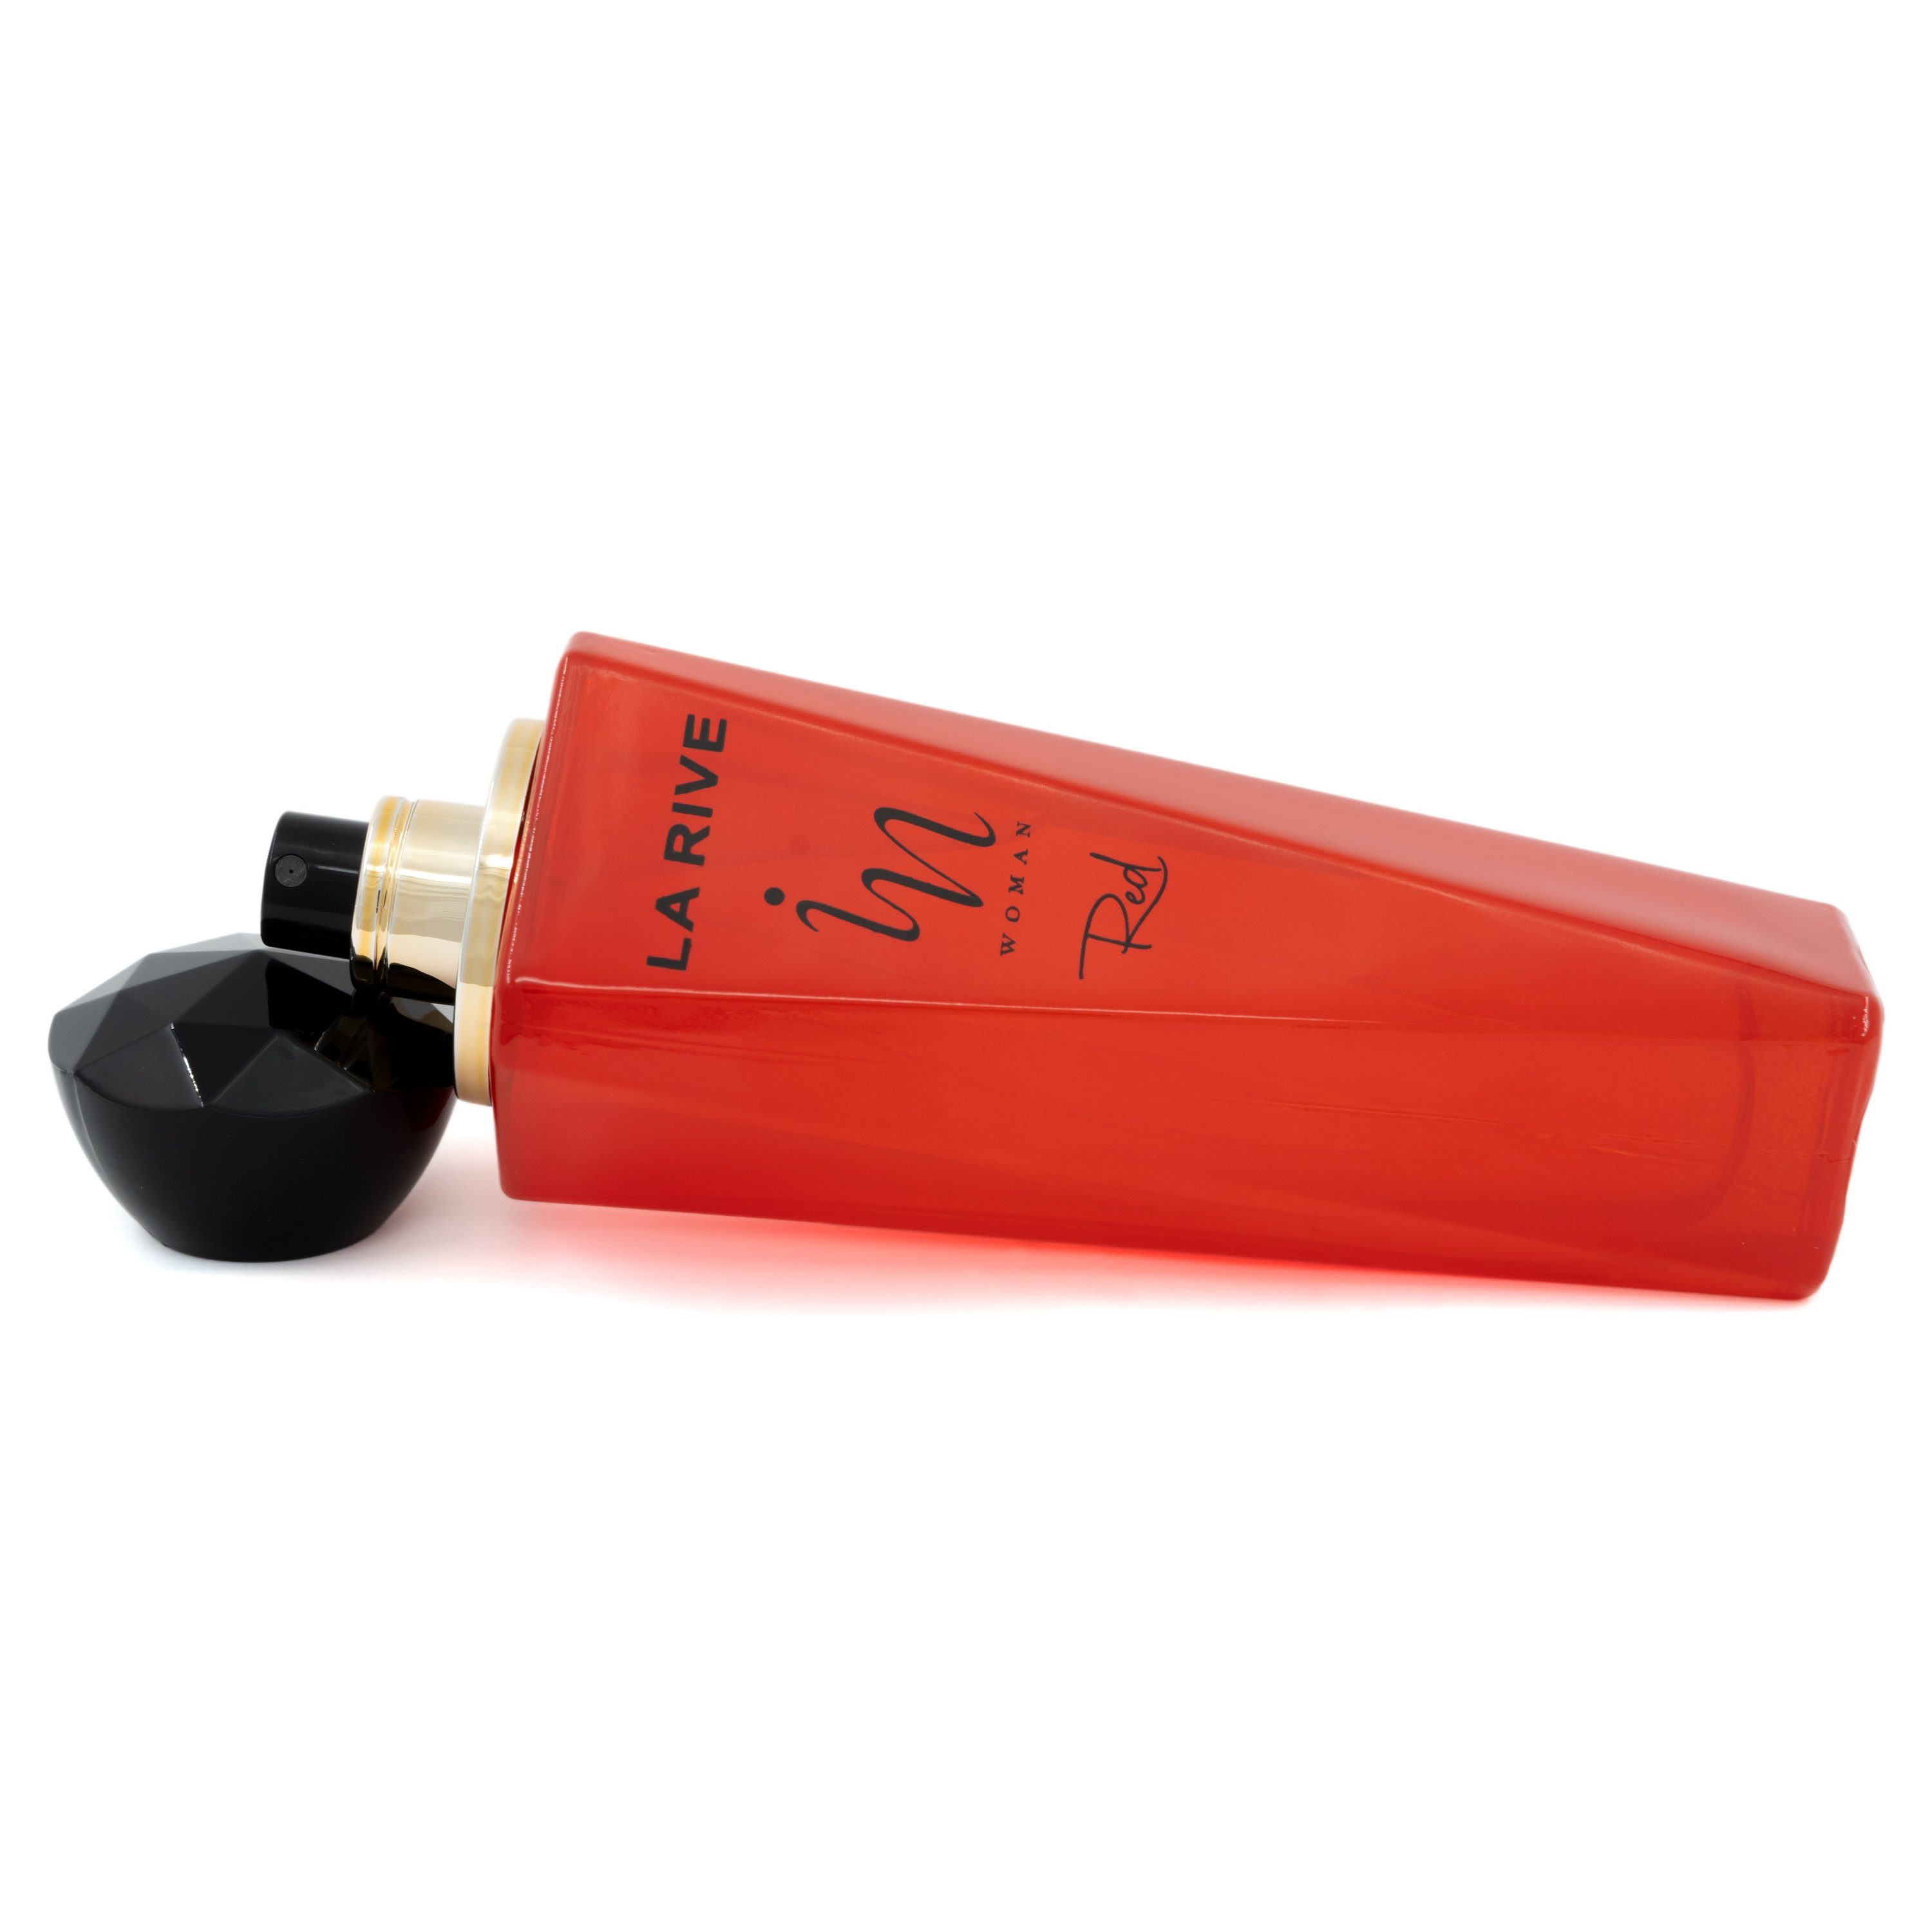 - - Woman RIVE La Red Parfum LA ml 100 de Parfum de Rive In Eau Eau